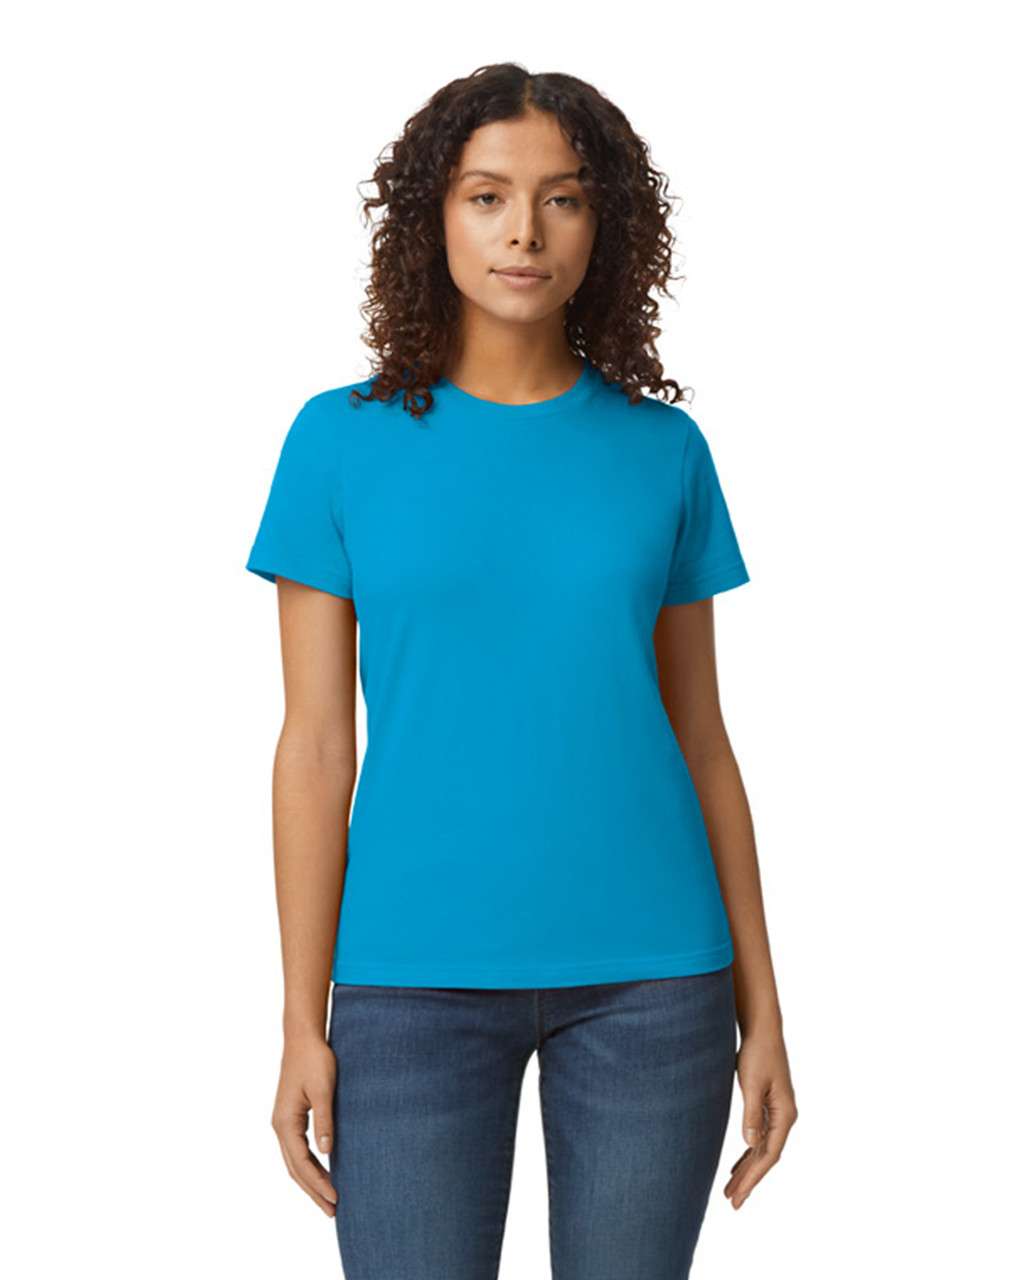 Gildan Softstyle® Midweight Women's T-shirt - blue